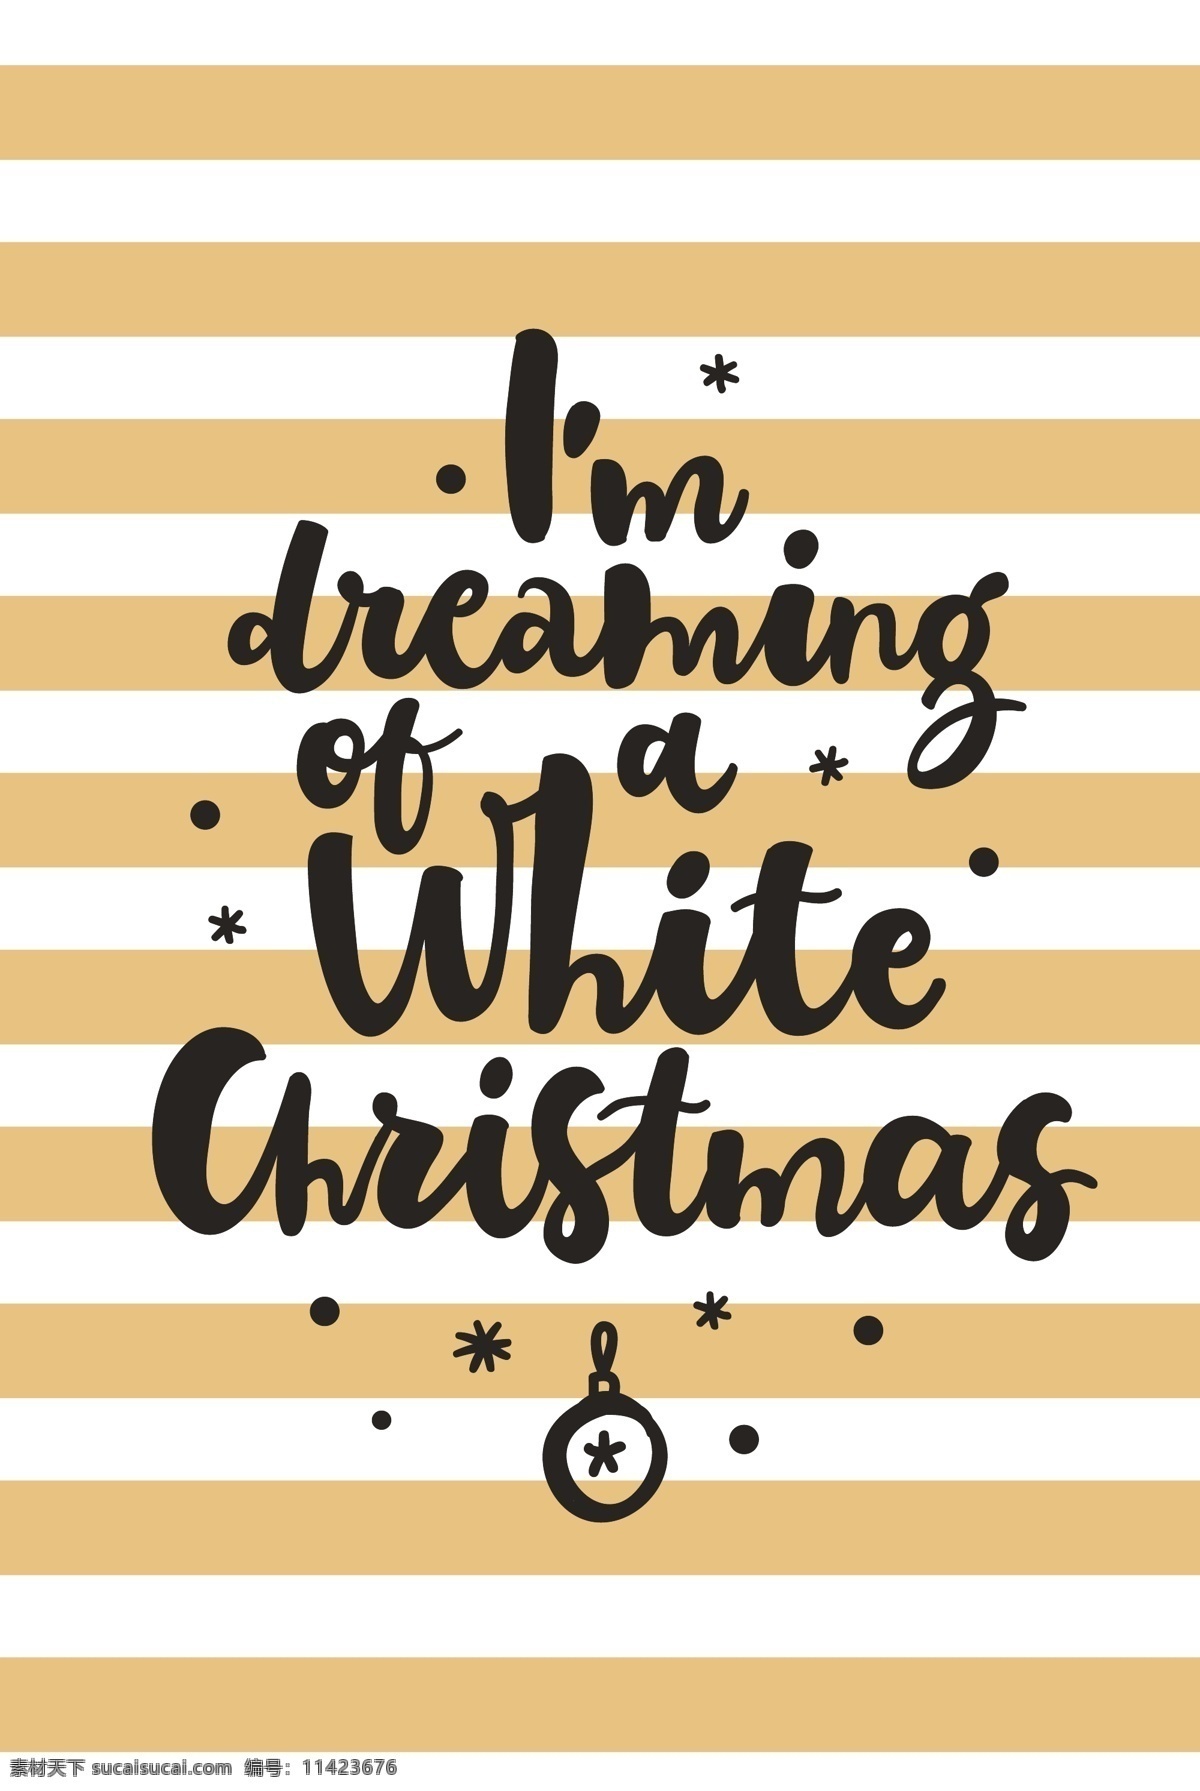 金 白 条纹 卡通 高清 矢量 冬季 节日 平面素材 设计素材 圣诞 圣诞节 矢量素材 下雪 雪白 艺术 字体